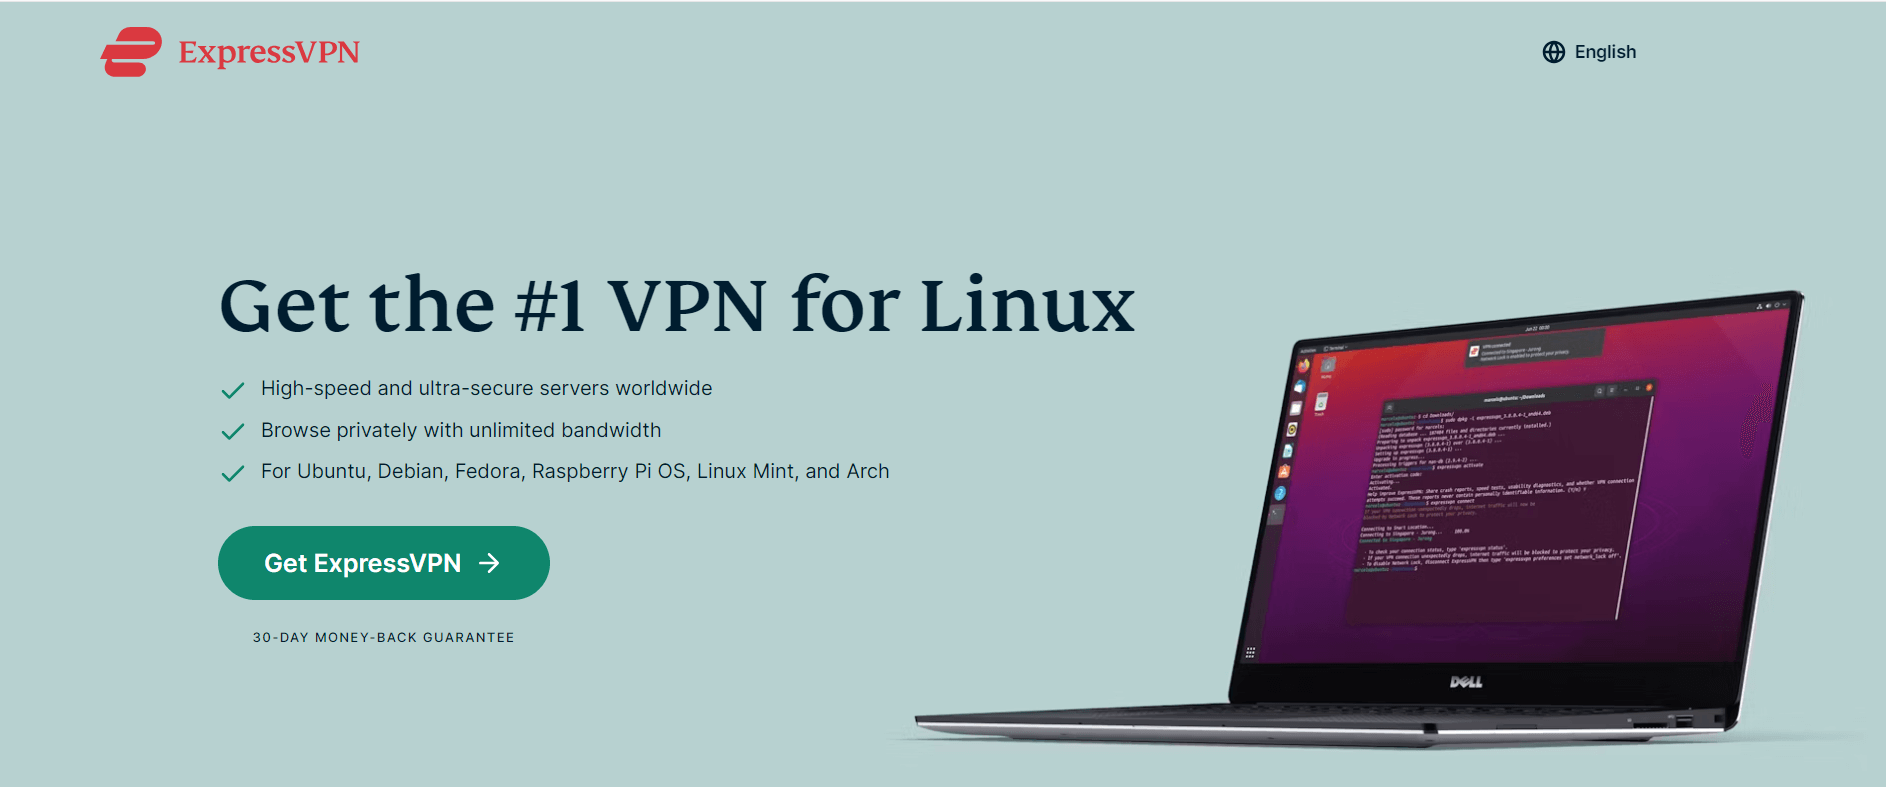 expressvpn-download-linux-in-UK